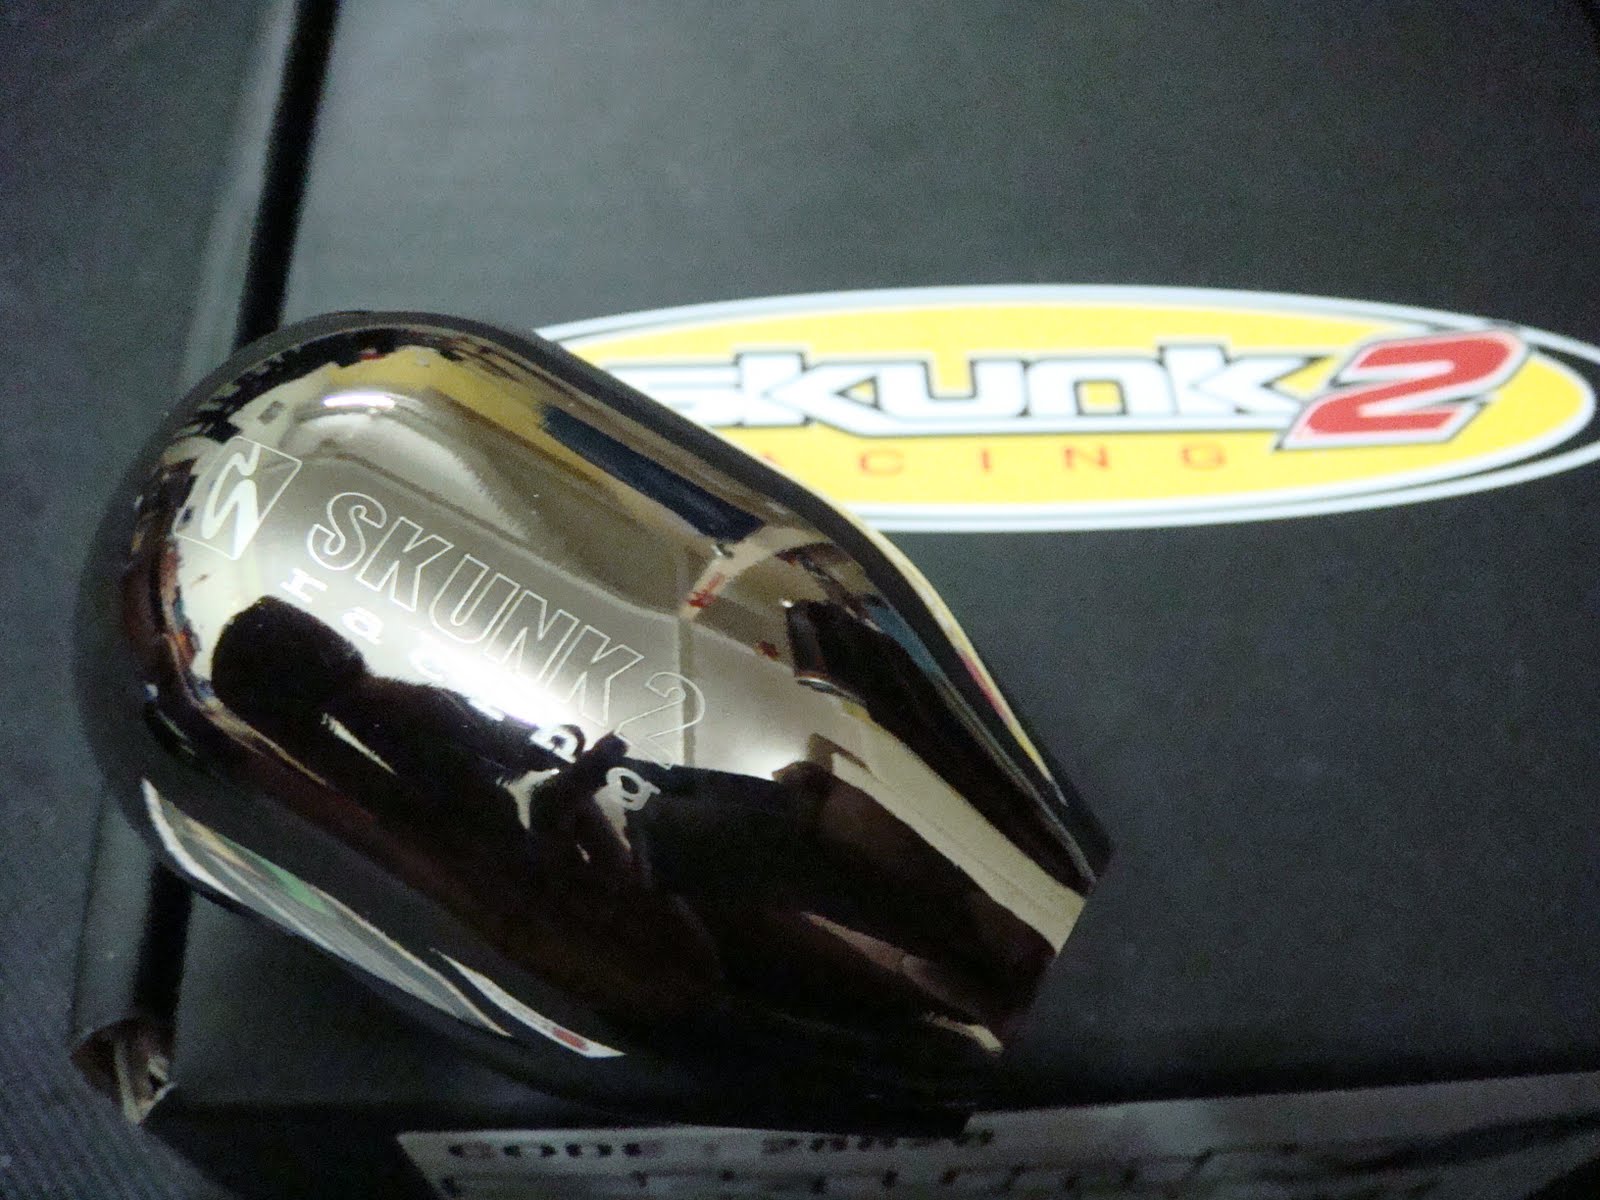 skunk2 gear knob